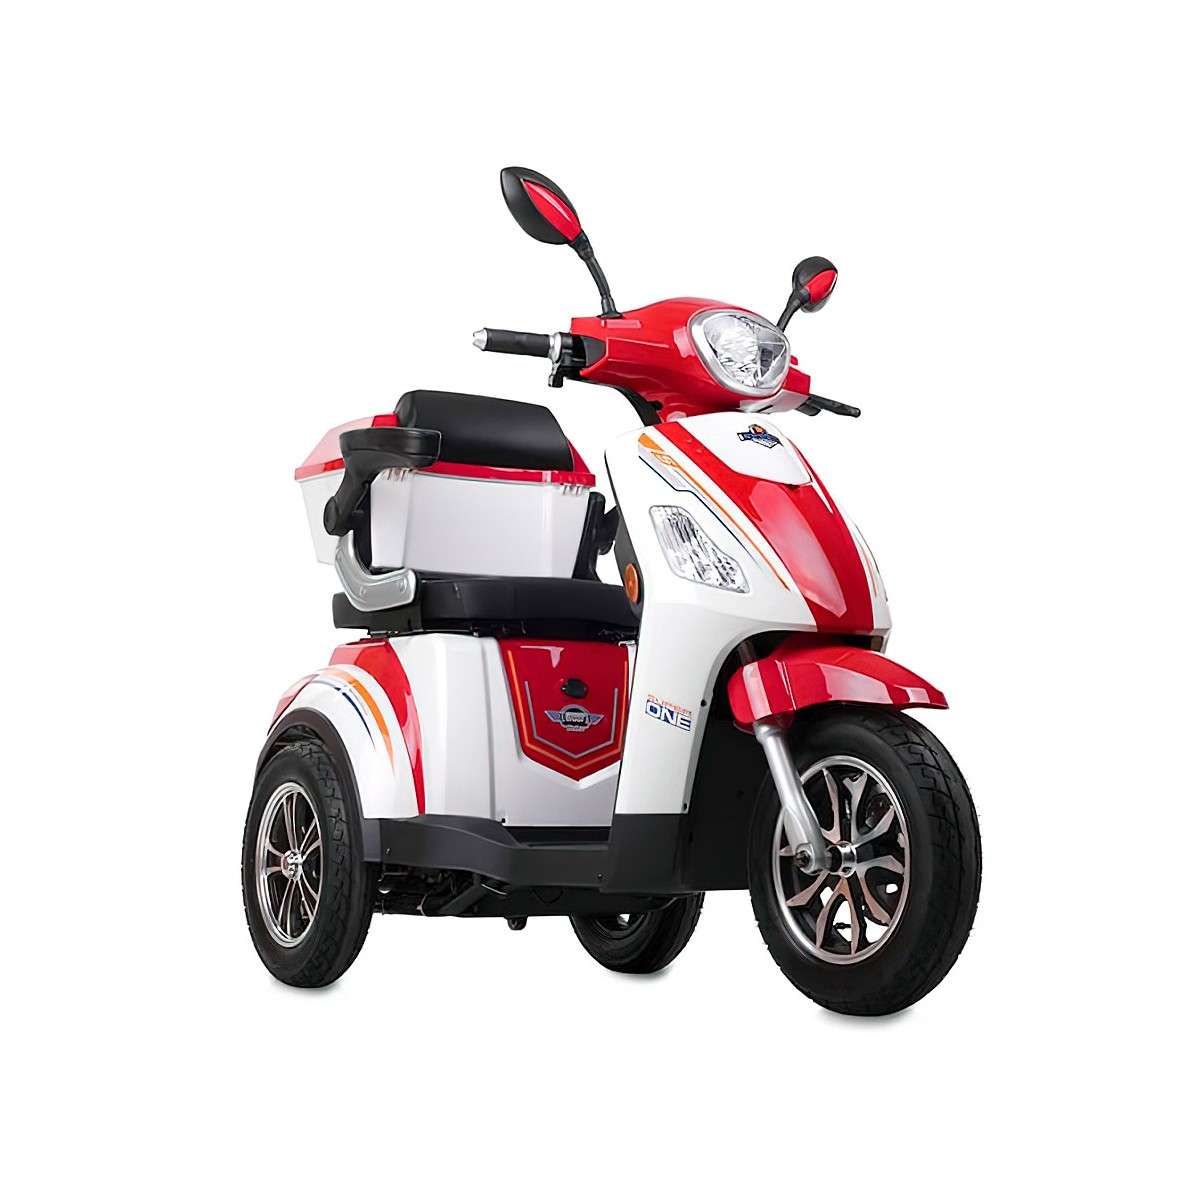 Scooter de 3 ruedas Madeira - Detalle 1